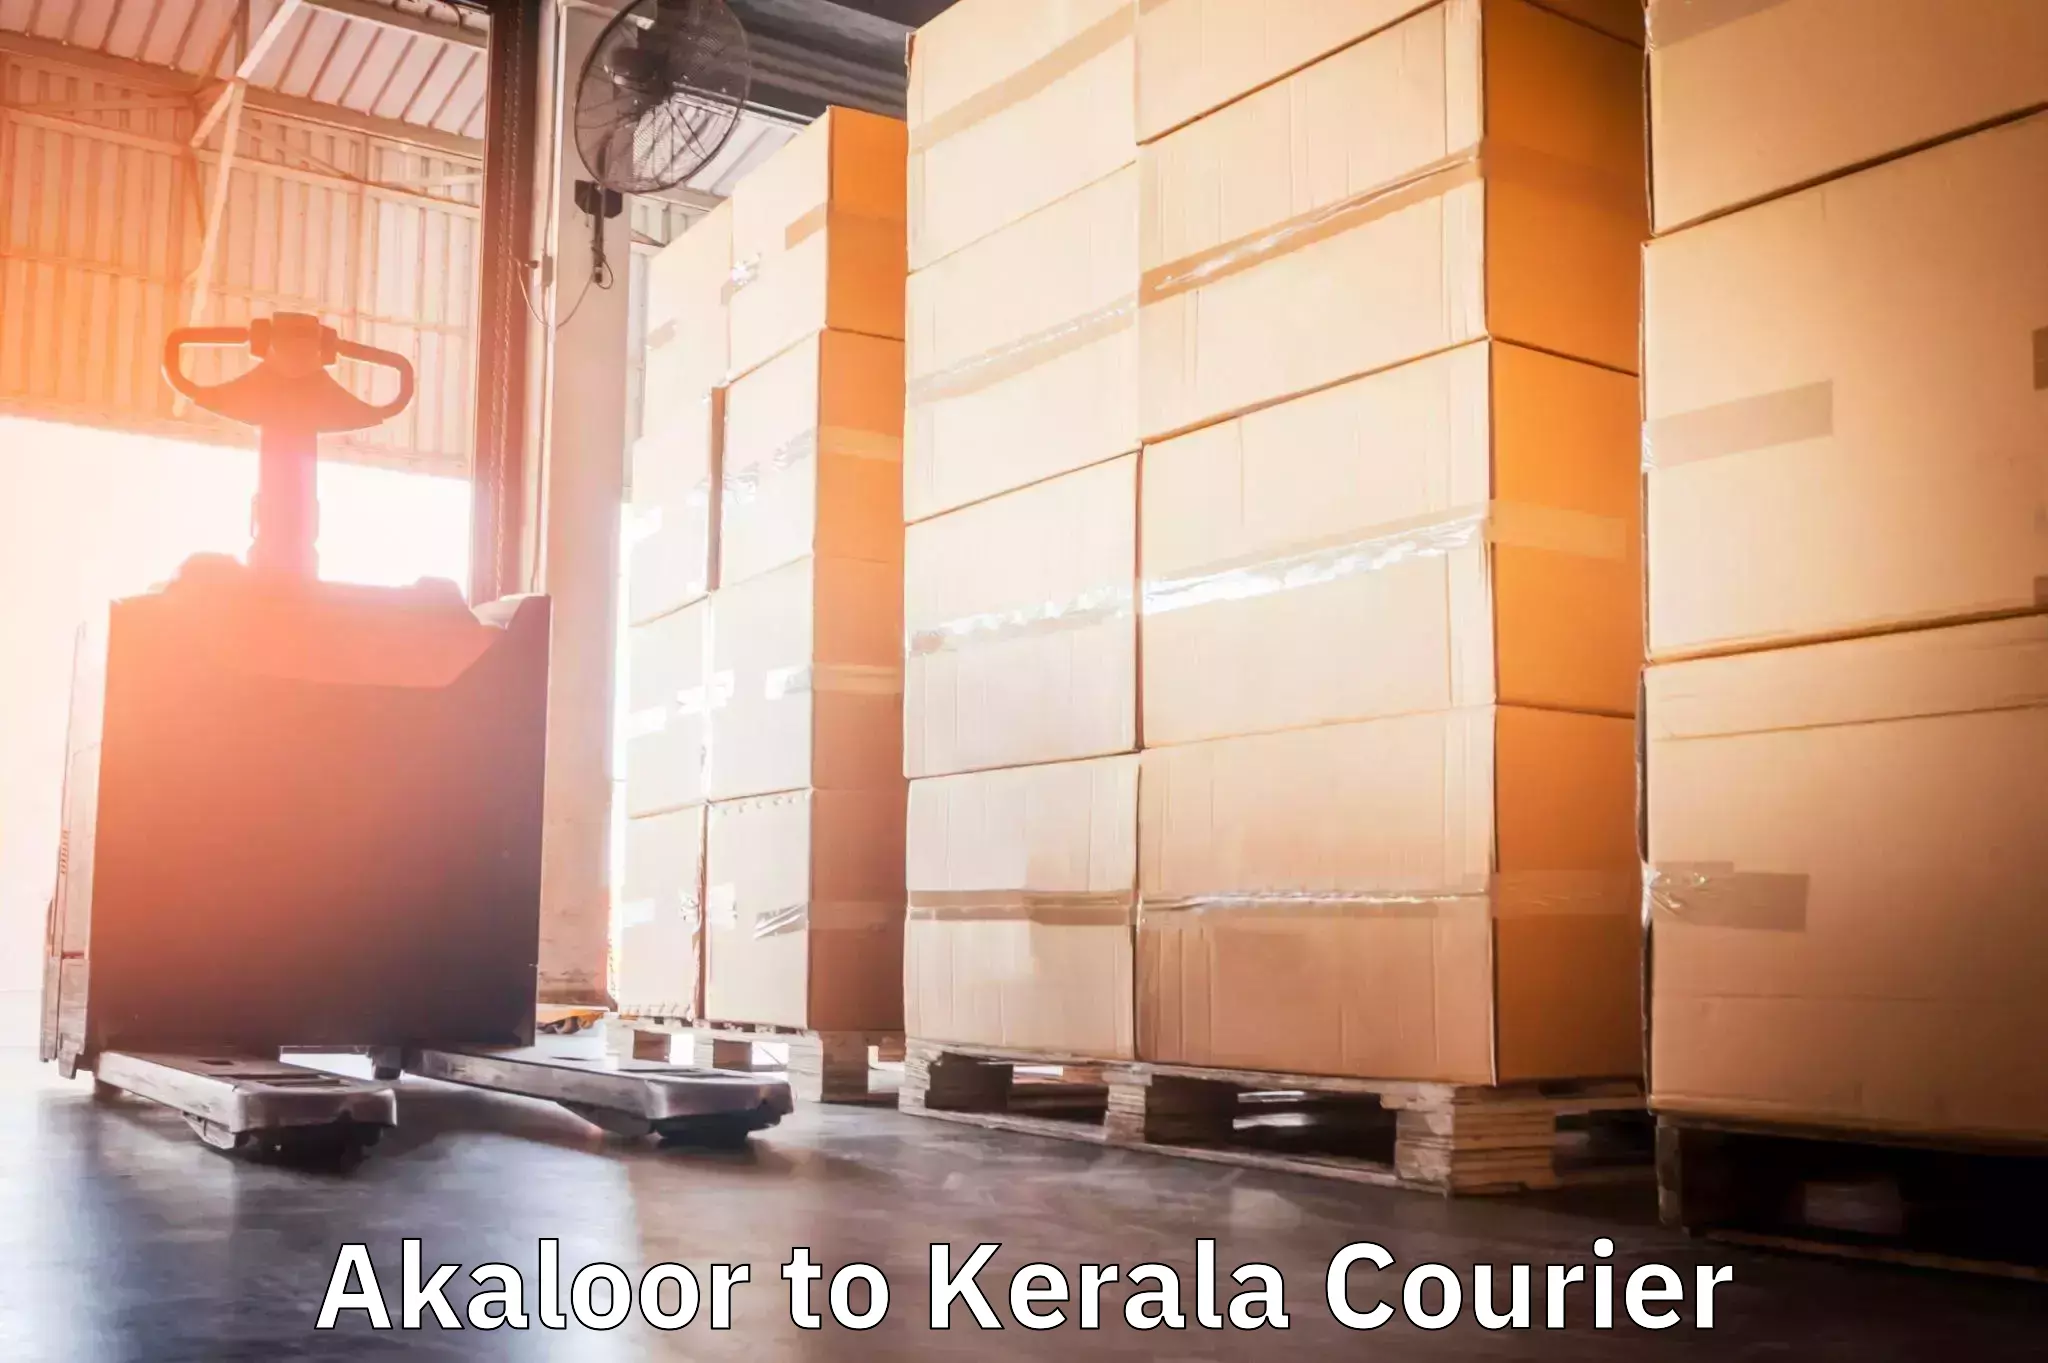 Package tracking in Akaloor to Kerala